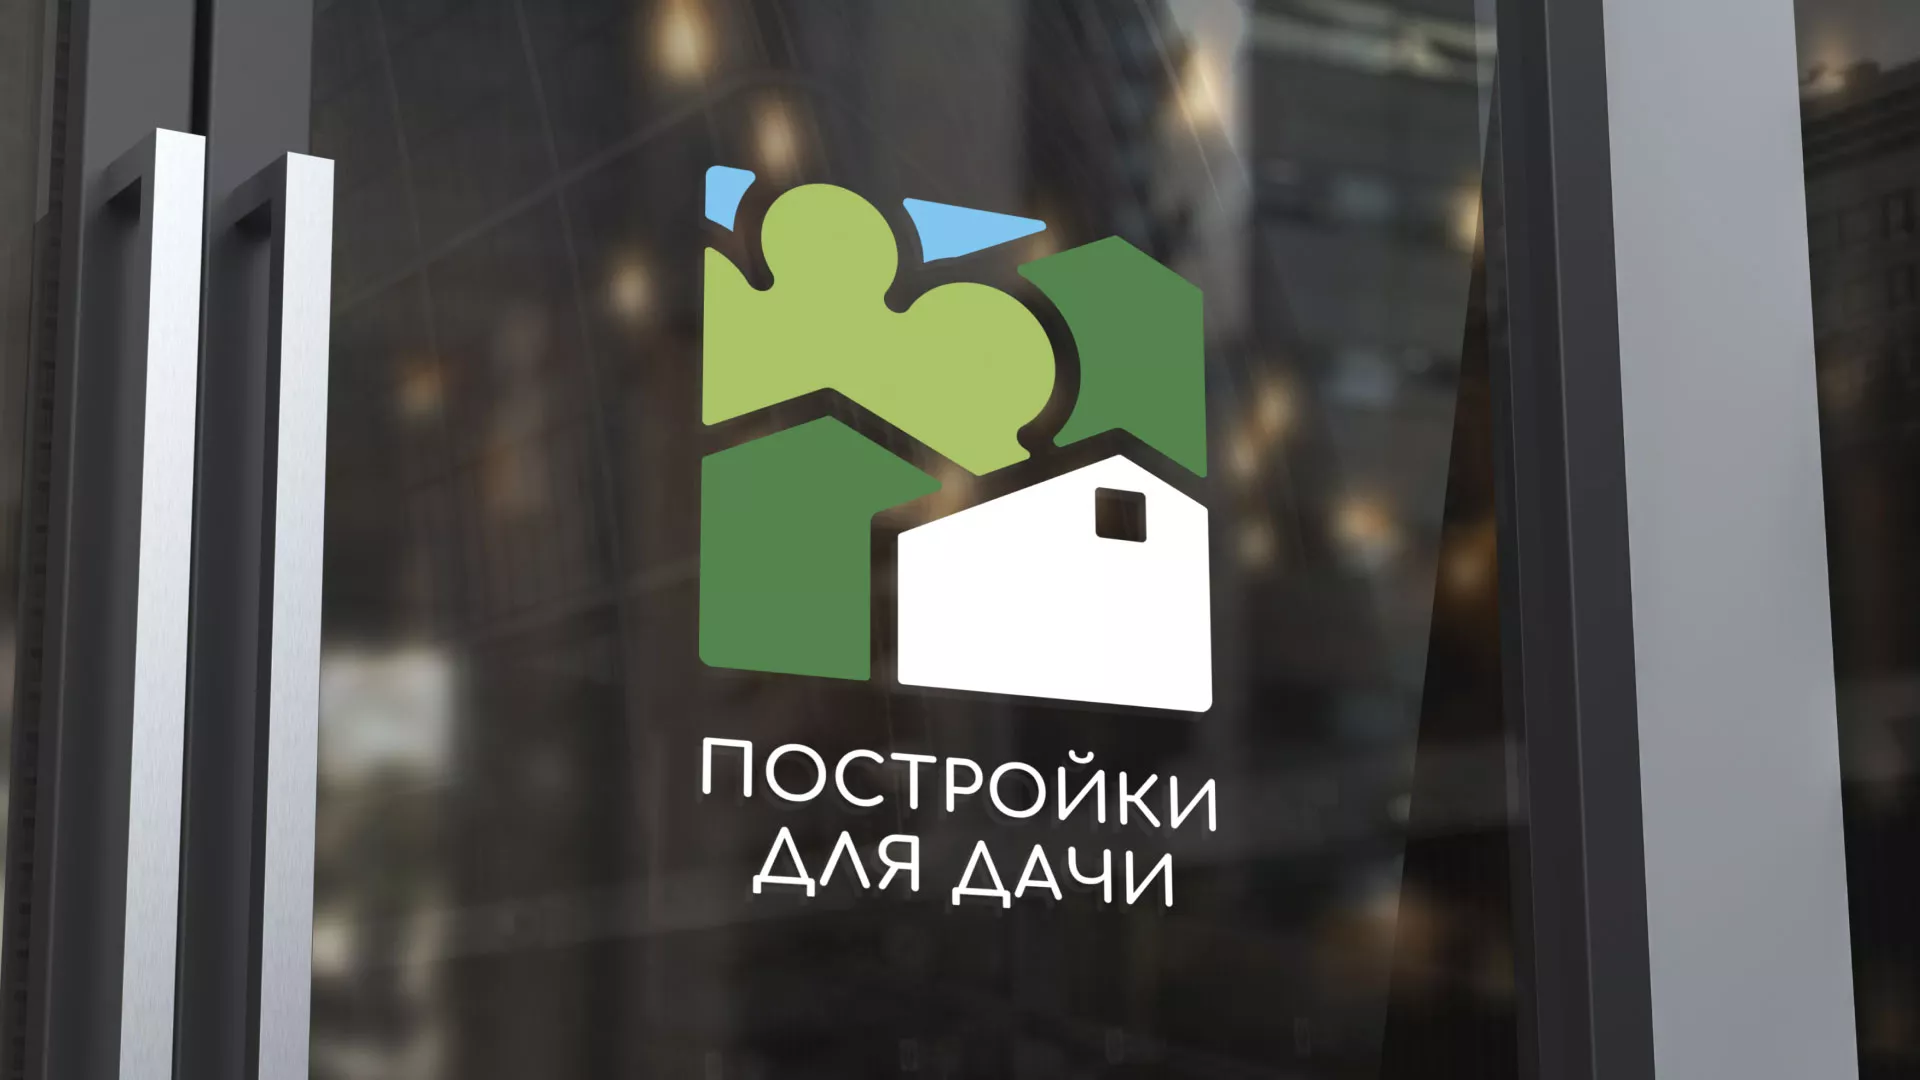 Разработка логотипа в Каменске-Уральском для компании «Постройки для дачи»